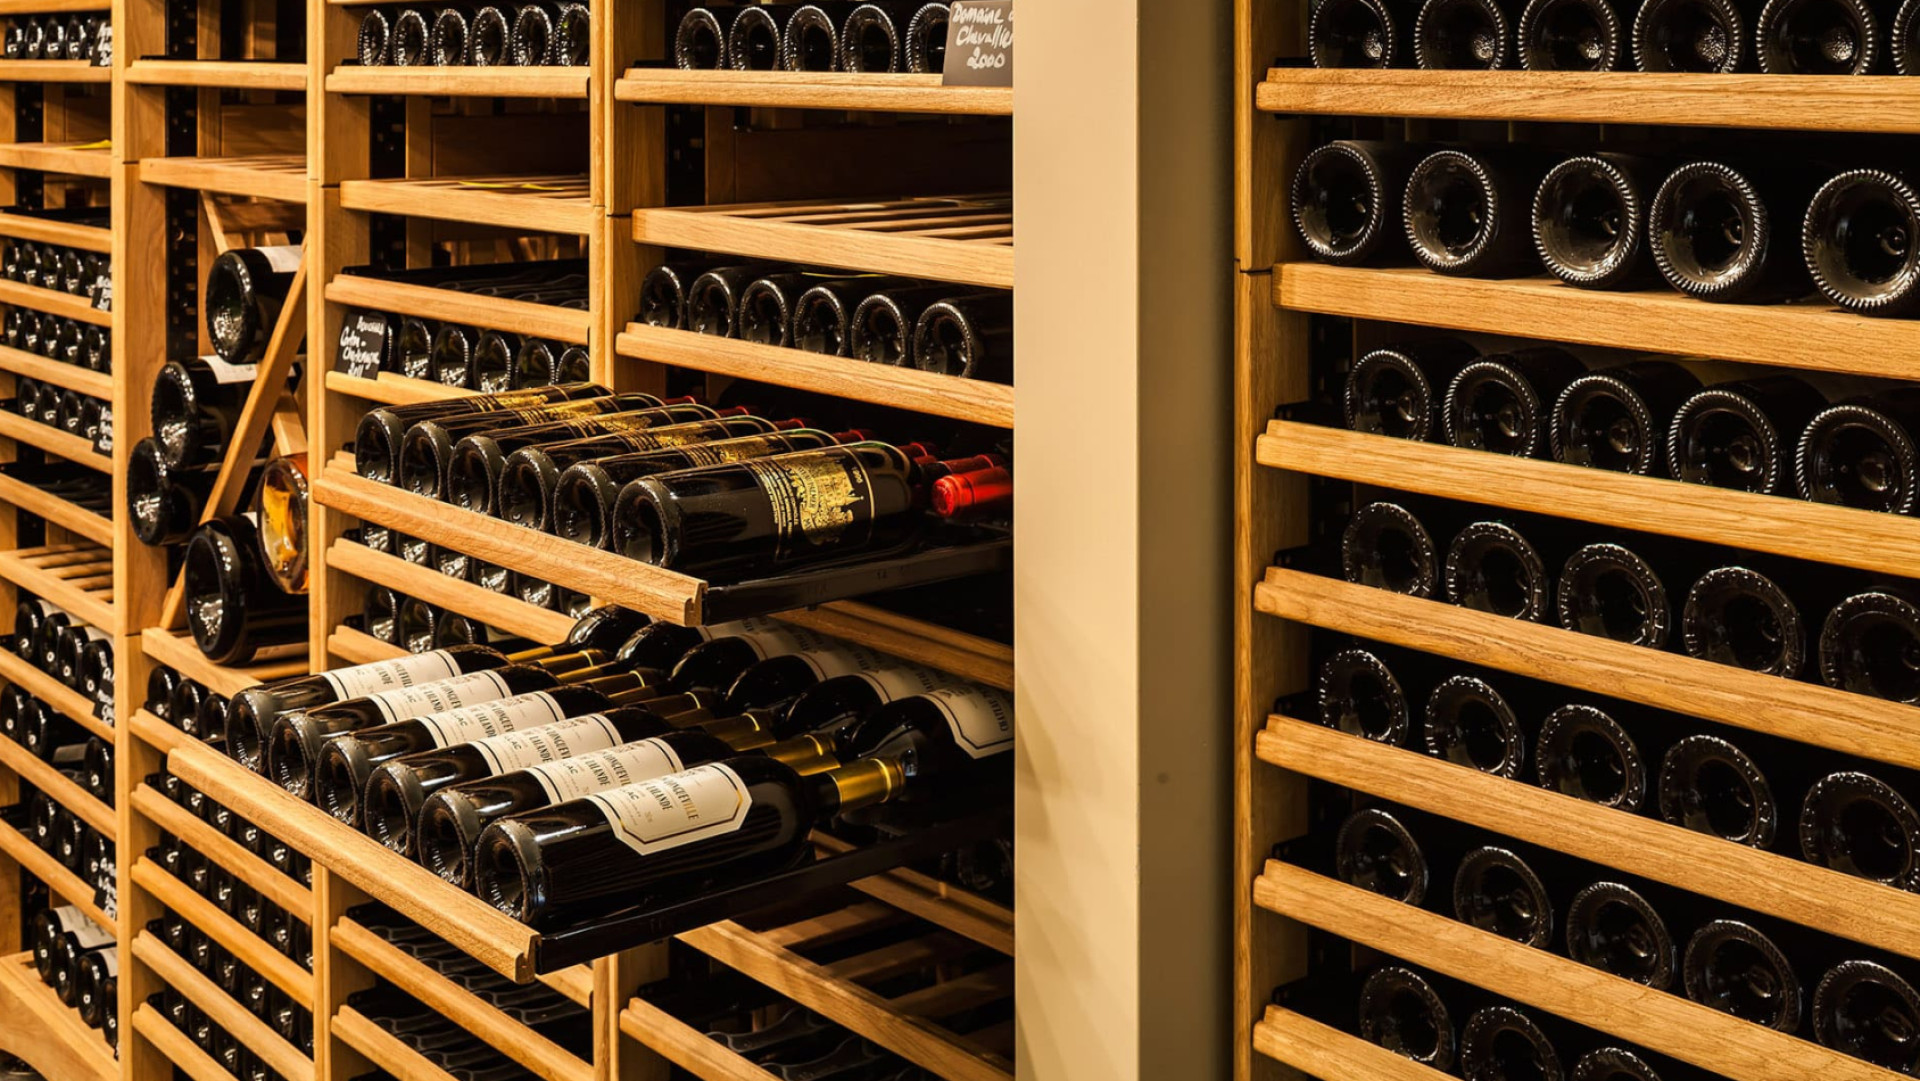 Möbel für Restaurants, Hotels oder Weinbars, die einen Weinkeller mit zahlreichen vorrätigen Weinreferenzen verwalten, oder dekorative und robuste Regalmodule und Displays für Weinhändler oder Unternehmen, die ihr Weinangebot in den Regalen hervorheben möchten.